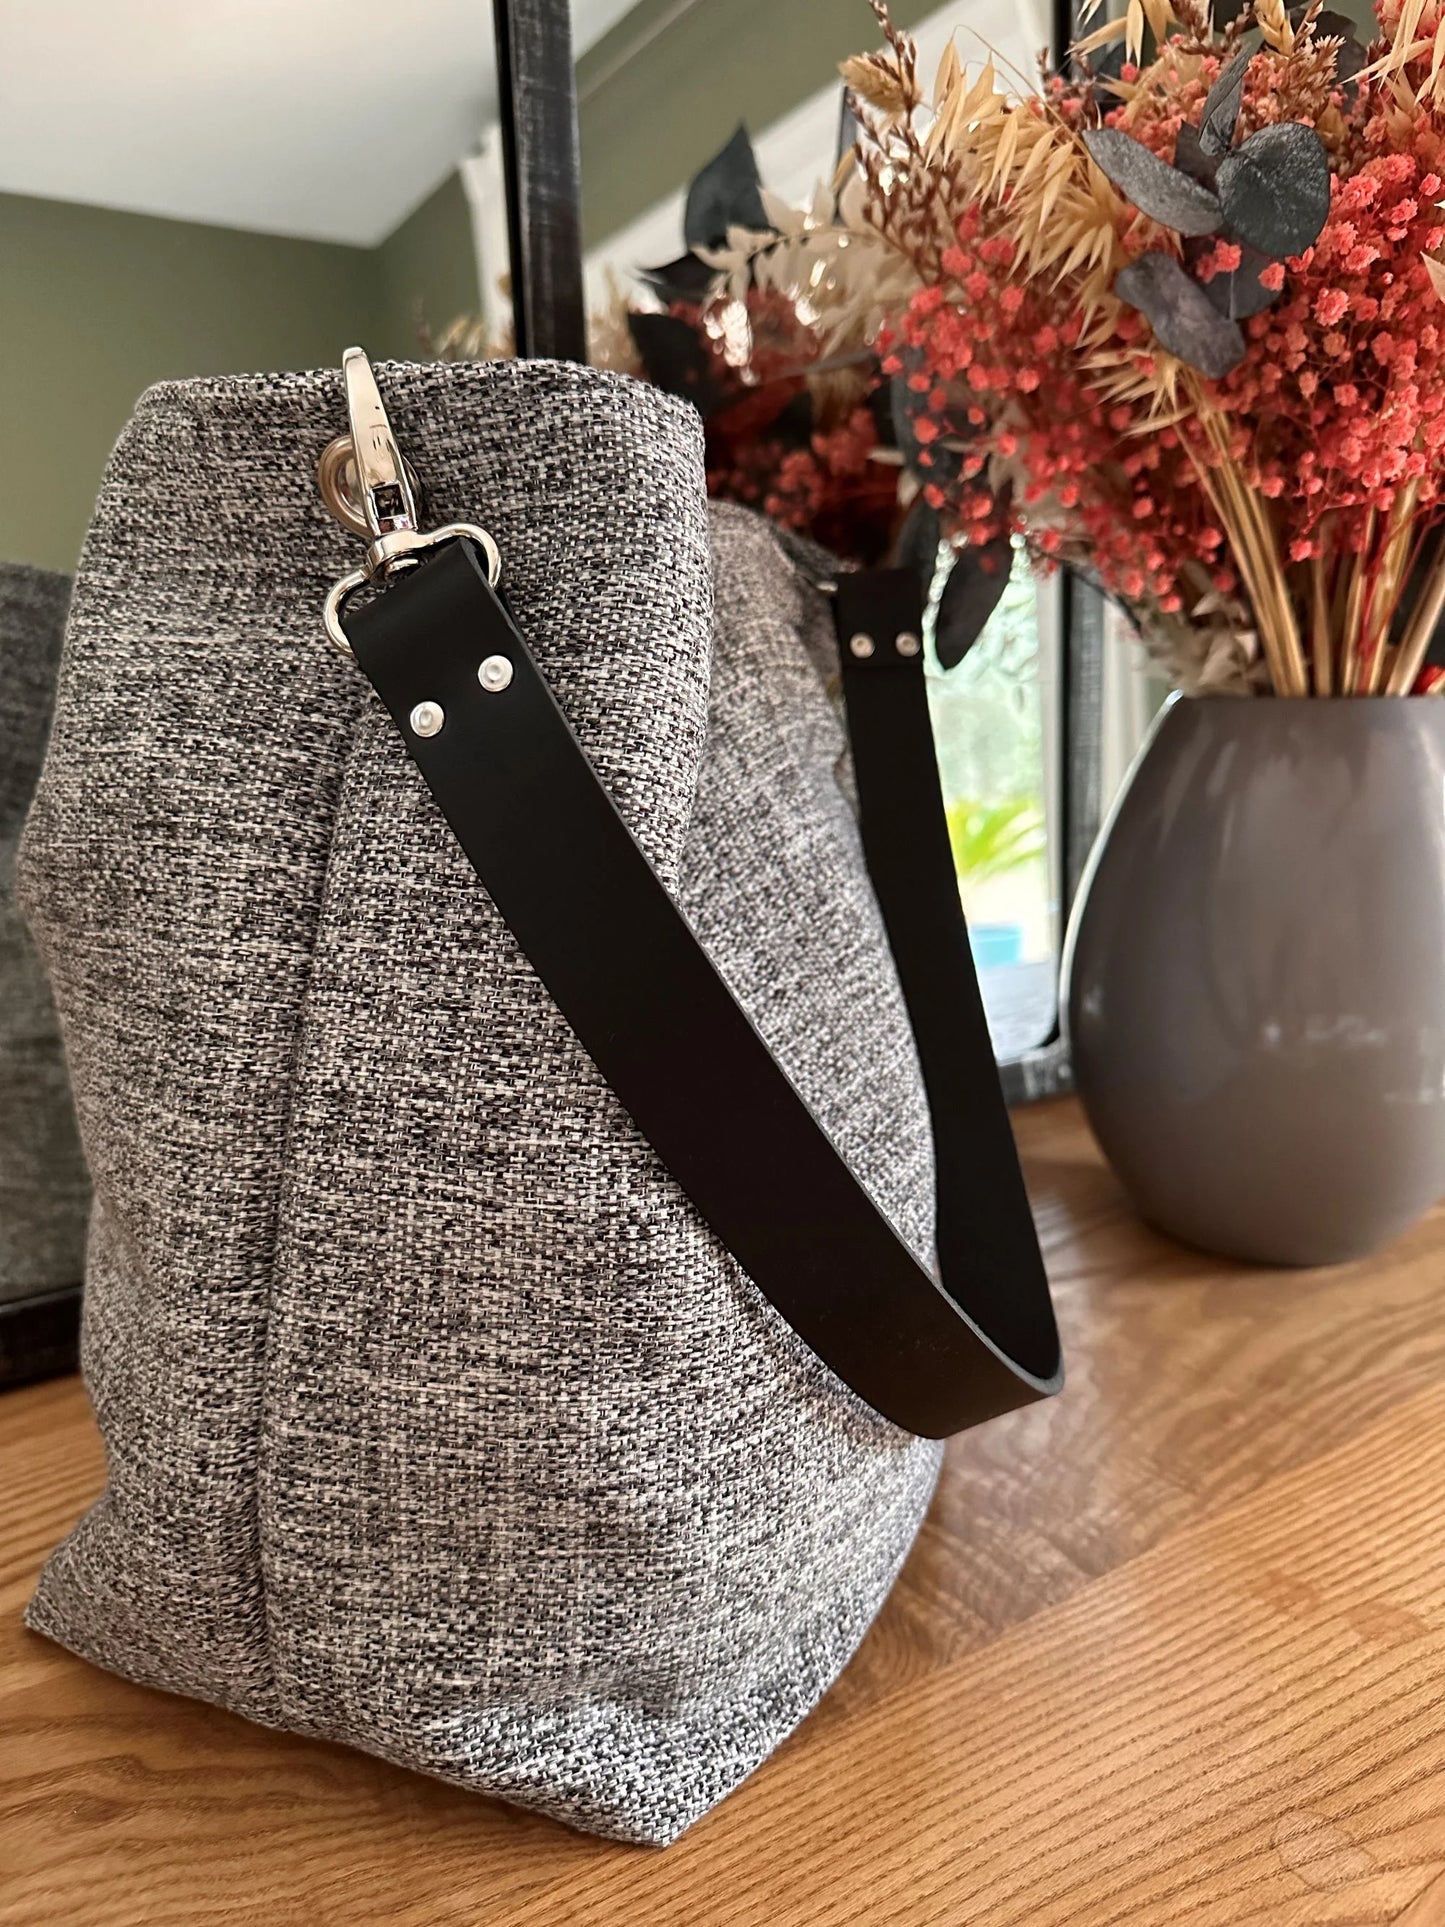 Le sac hobo gris chiné et son anse en cuir noir amovible.